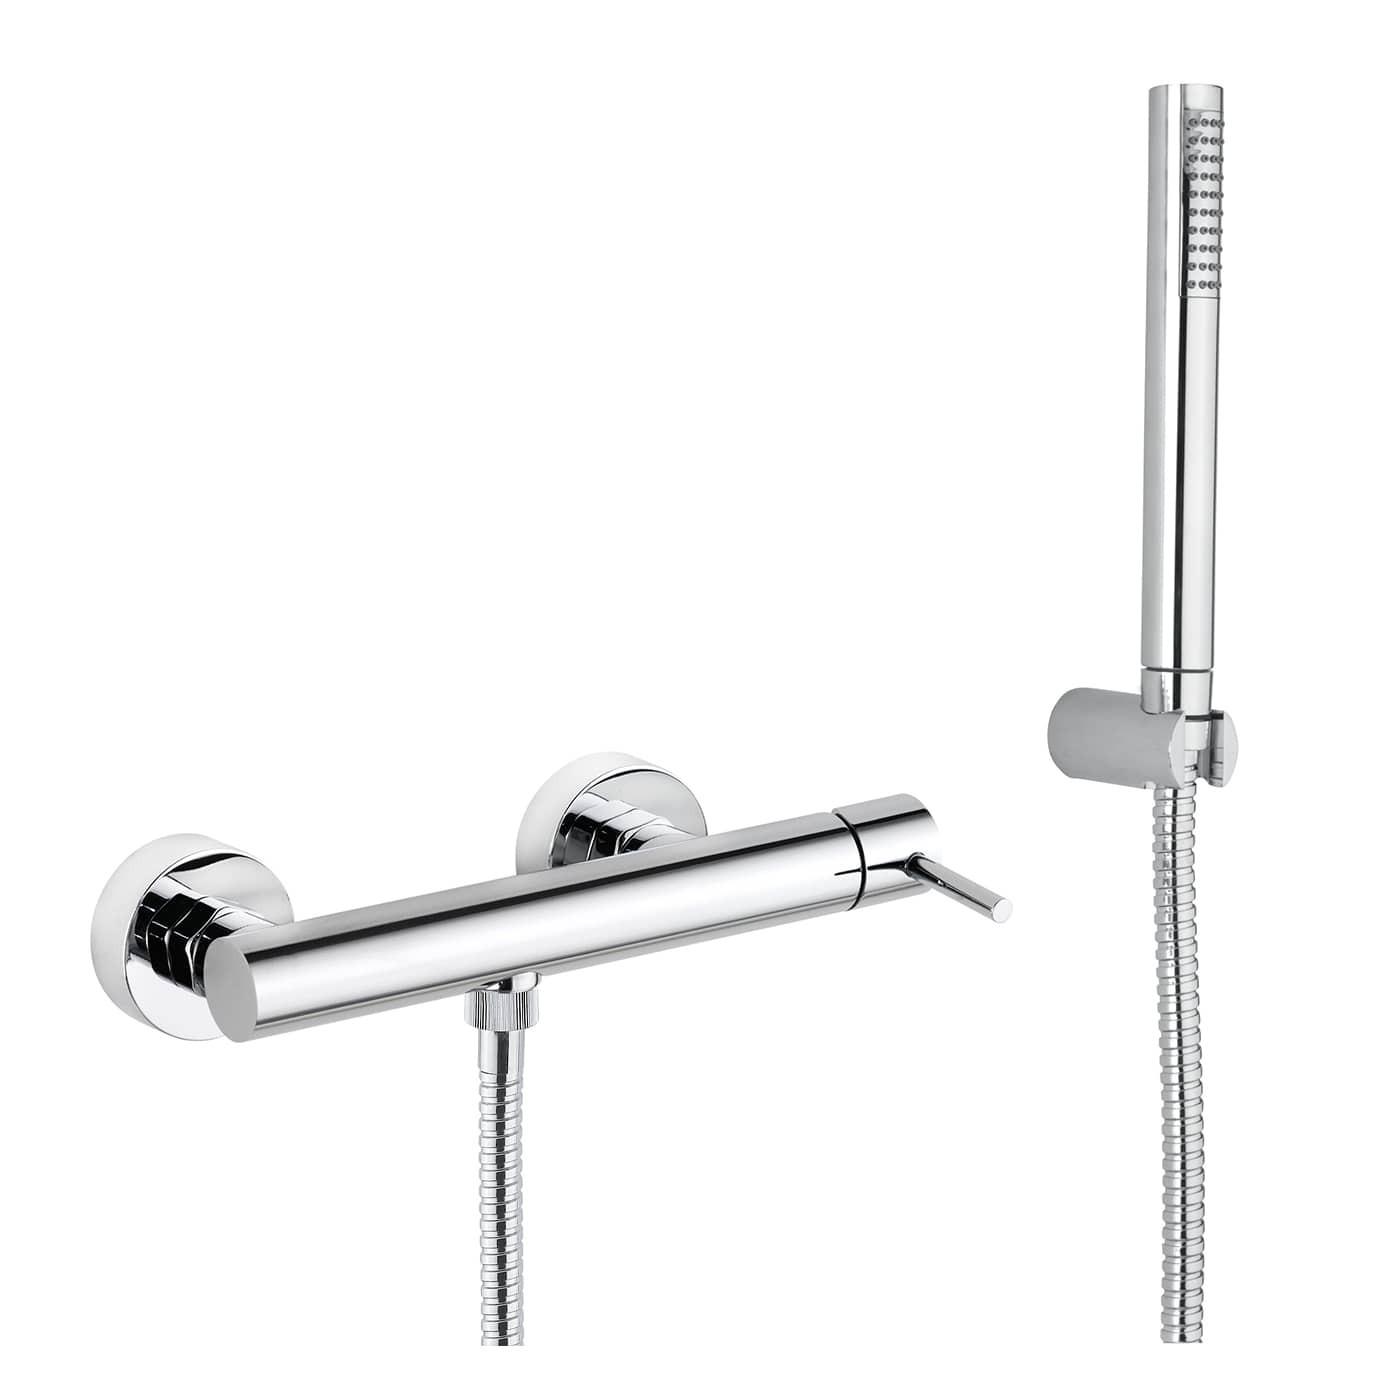 MIDE225RO - Monocomando esterno doccia con attacco flex 1/2" con kit doccia